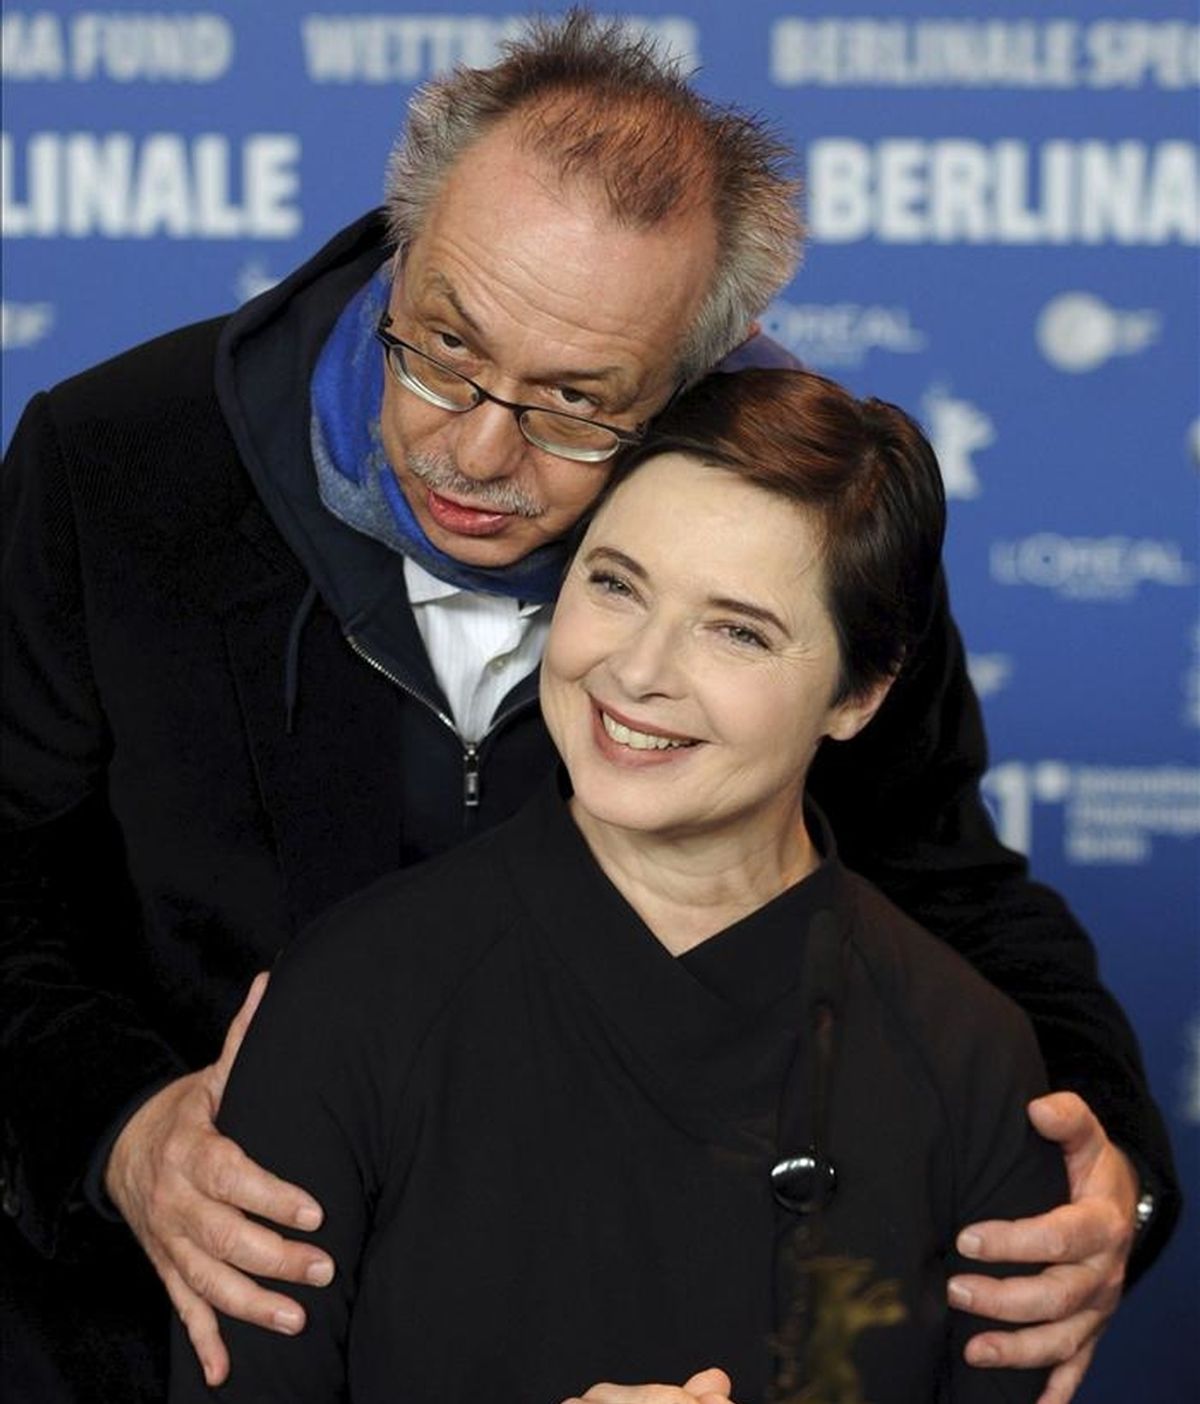 La actriz y directora italiana Isabella Rossellini (d) posa junto al director de la Berlinale, Dieter Kosslick, durante el pase gráfico de los miembros del jurado de la 61 edición del Festival Internacional de Cine de Berlín (Alemania), hoy, jueves 10 de febrero de 2011. EFE